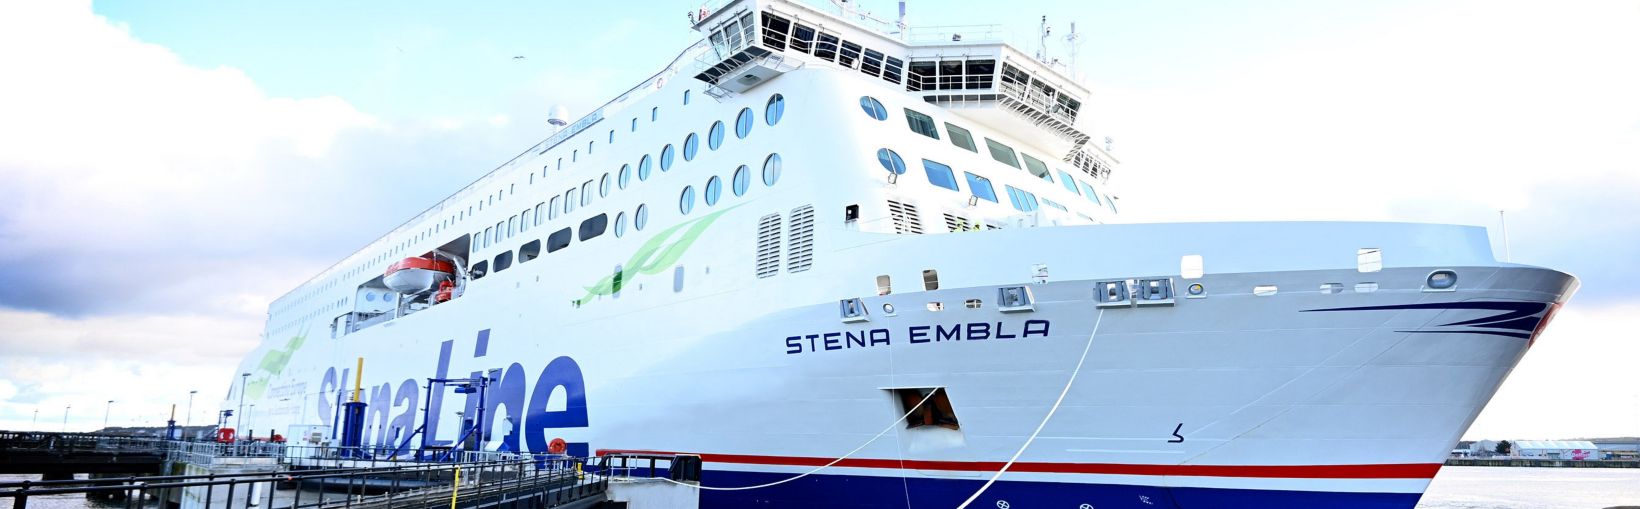 Fergen Stena Embla dokksatt i Liverpool havn